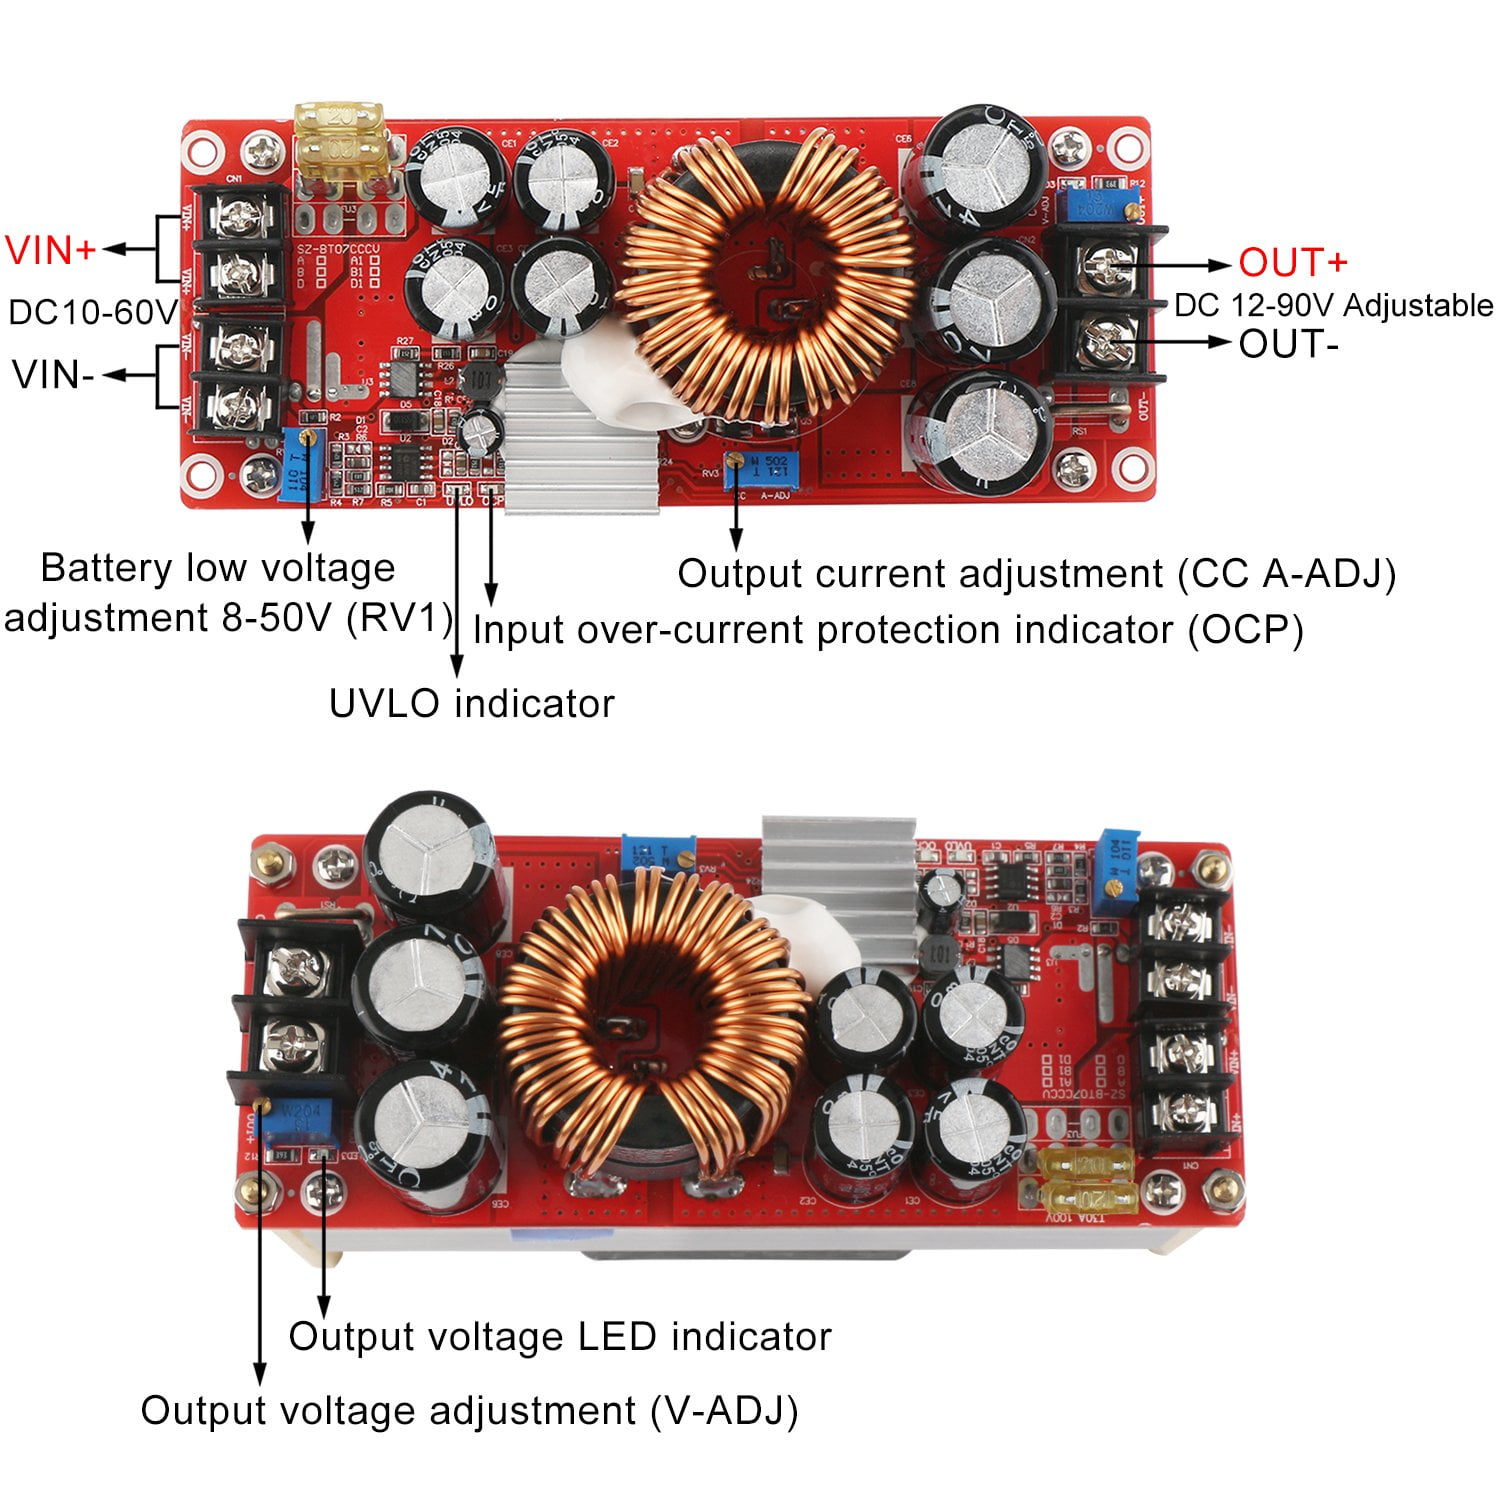 DC to DC Boost Converter 090405 DROK Voltage Regulator Power Supply 2.5-25V 5V 9V 12 V Step Up to 5-25V 24V Adjustable Volt Transformer Module for Phone/Mp3/Mp4/PSP 